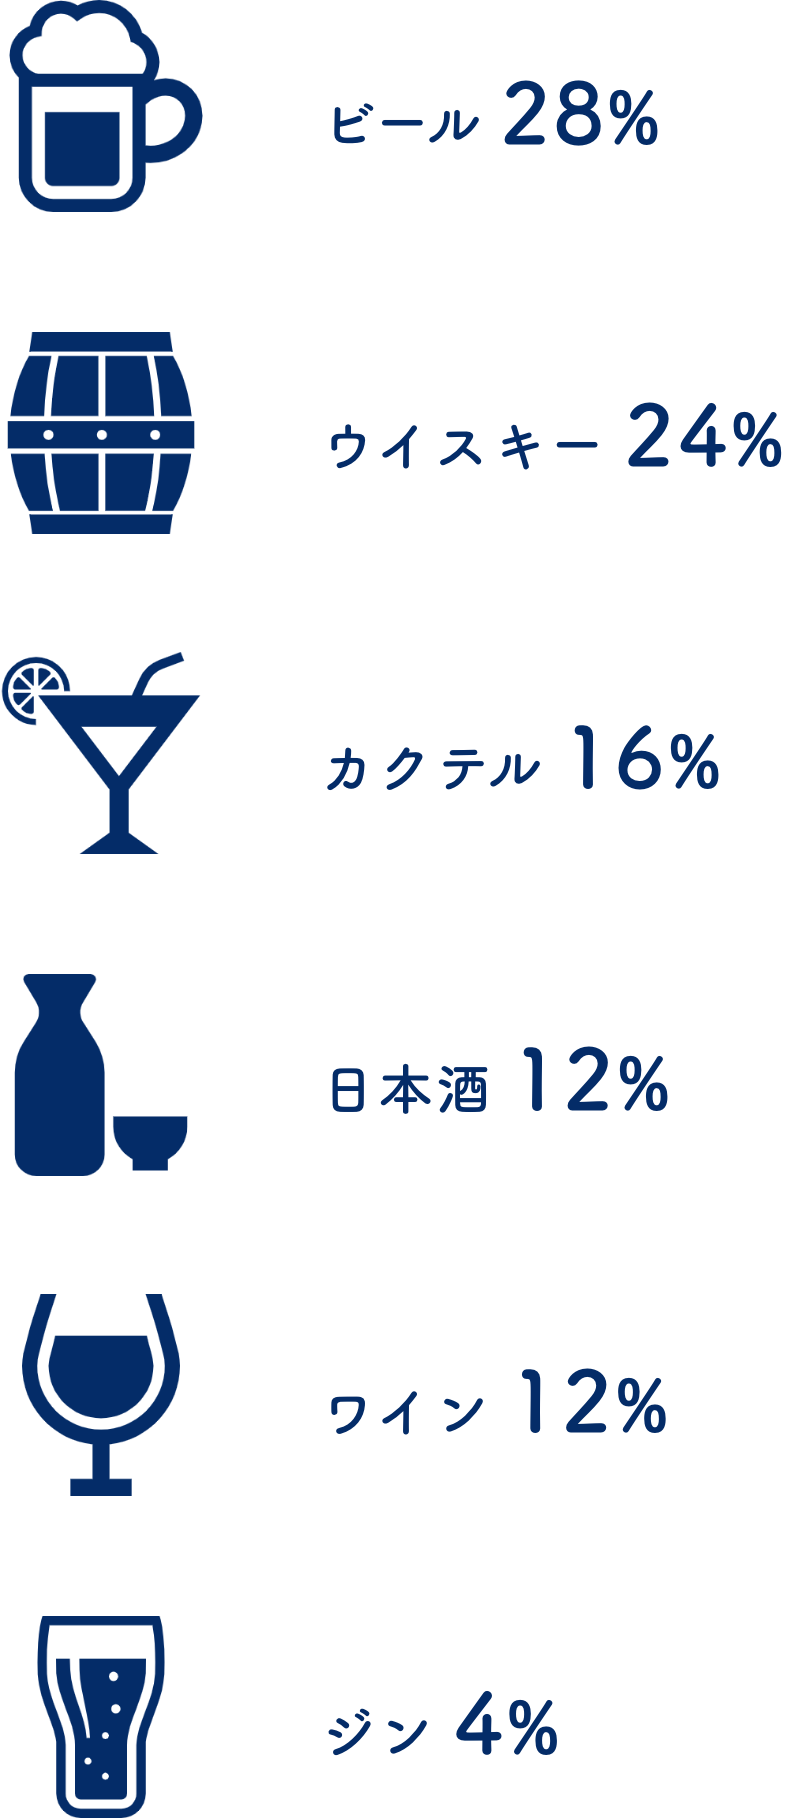 
ビール:28%,ウイスキー:24%,カクテル:16%,日本酒:12%,ワイン:12%,ジン:4%